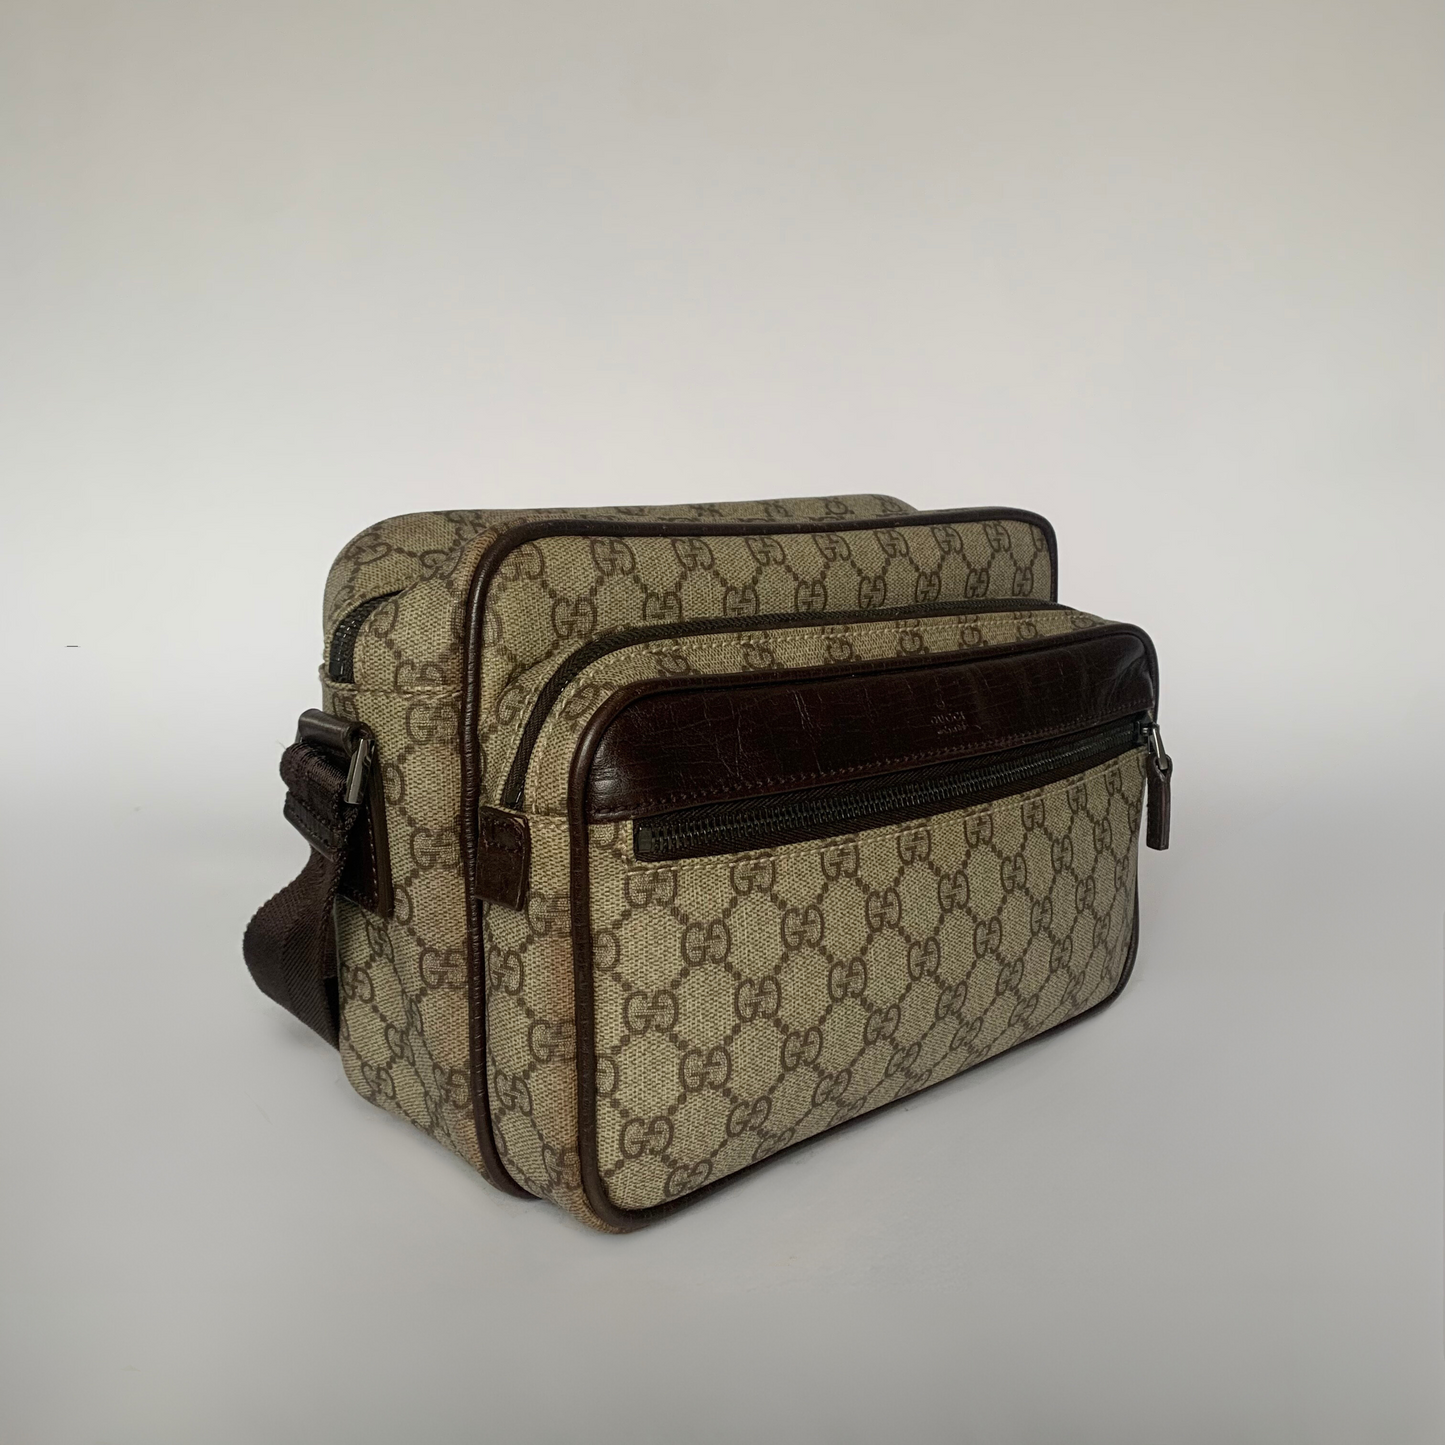 Gucci Gucci Sac bandoulière suprême PVC - Sacs bandoulière - Etoile Luxury Vintage